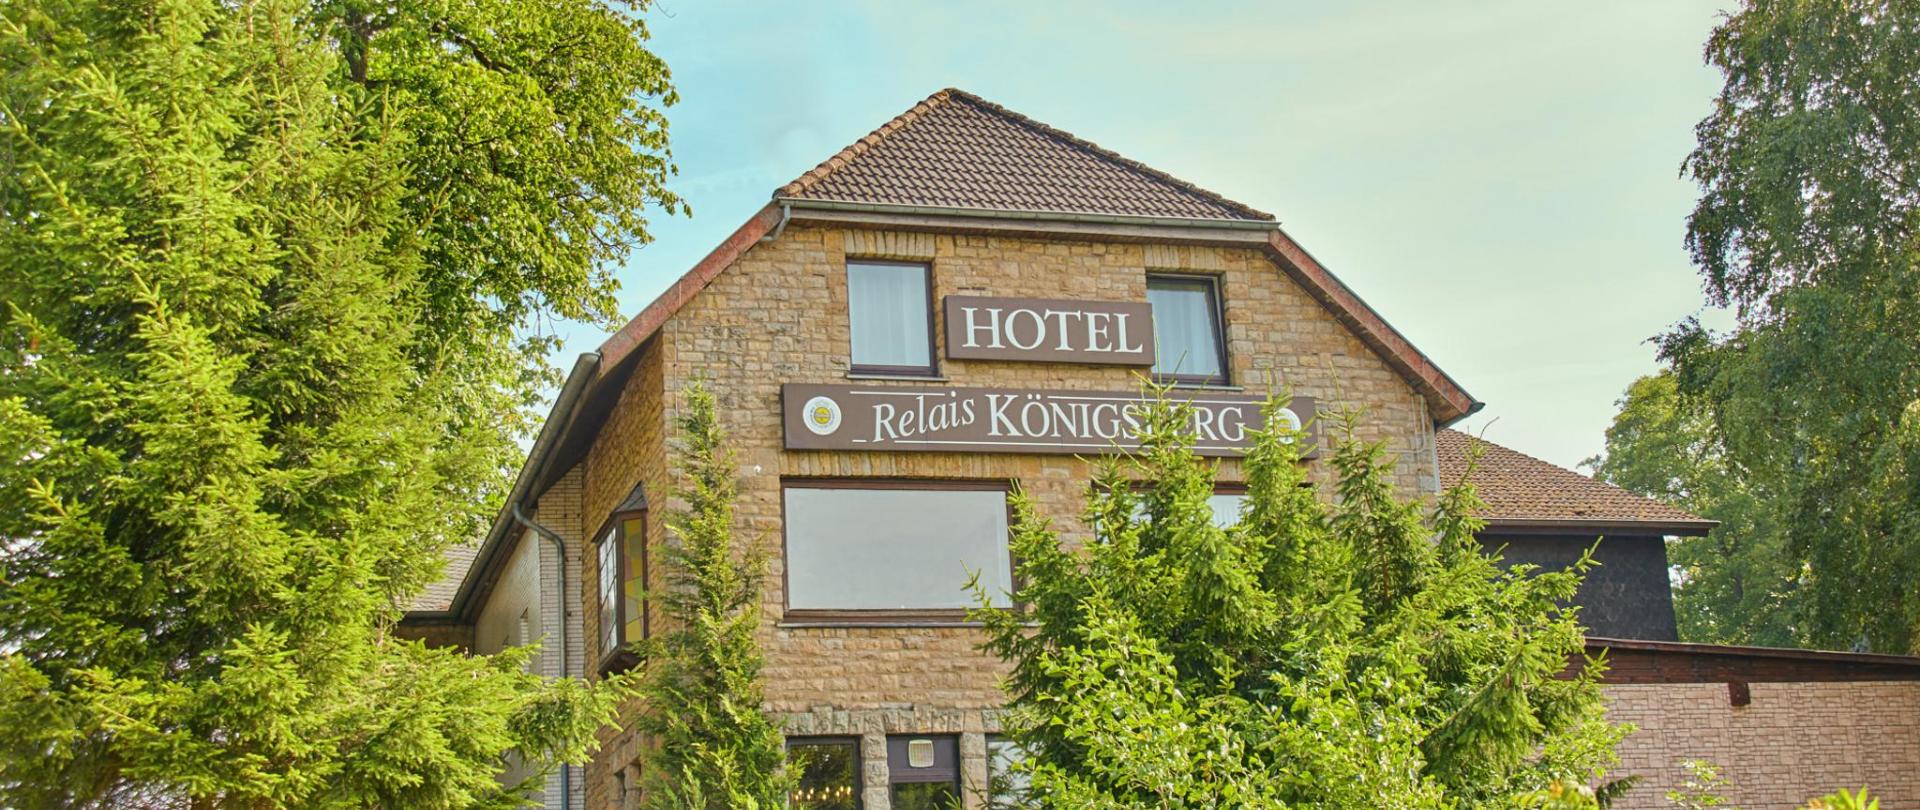 Willkommen im Hotel Relais Königsberg